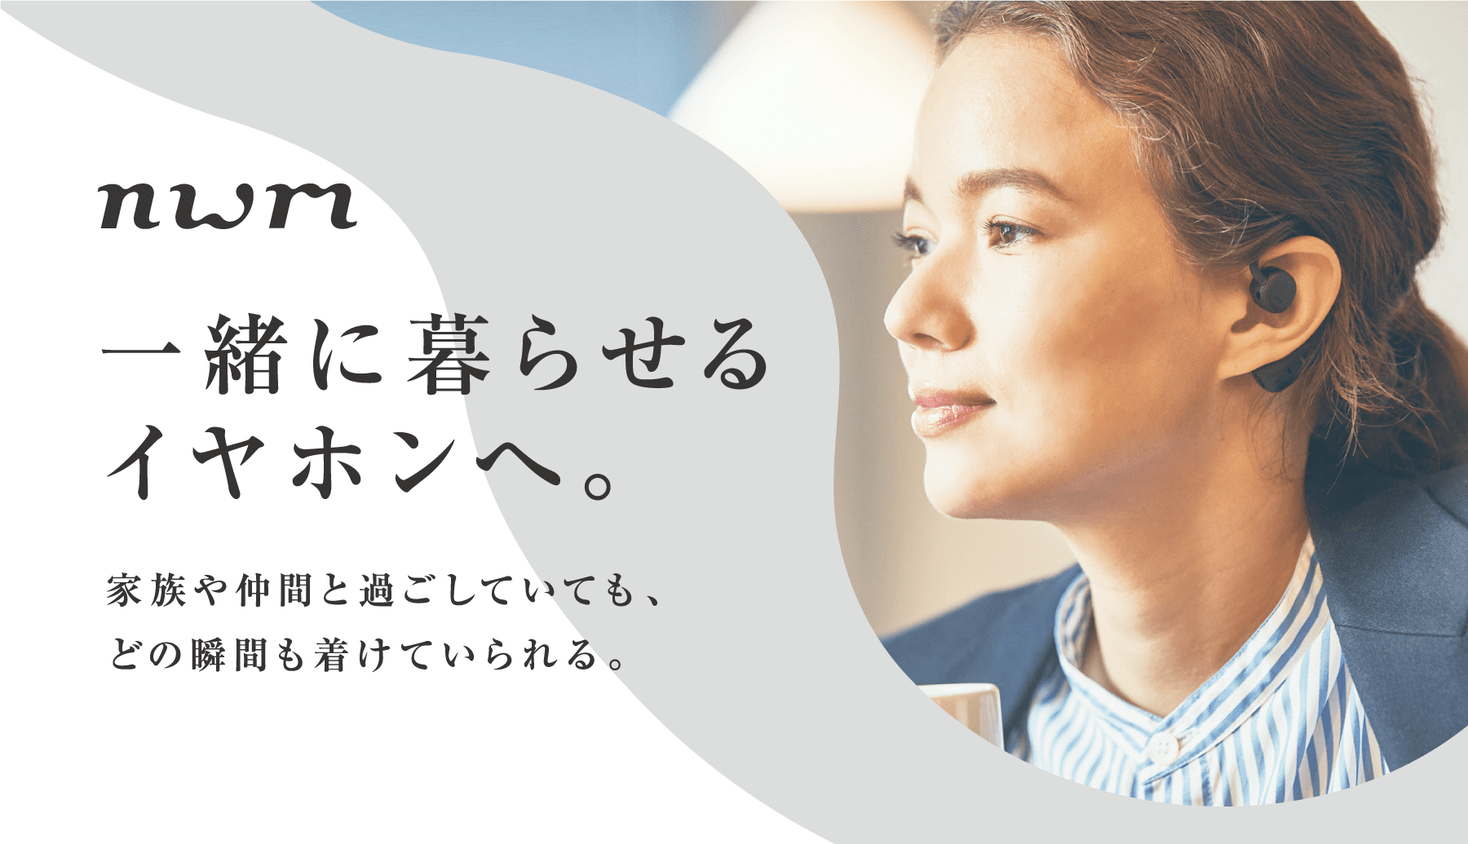 NTTグループの音響ブランド「nwm（ヌーム）」 世界初PSZ技術搭載のワイヤレスパーソナルイヤースピーカーを4月3日より一般販売開始｜NTT